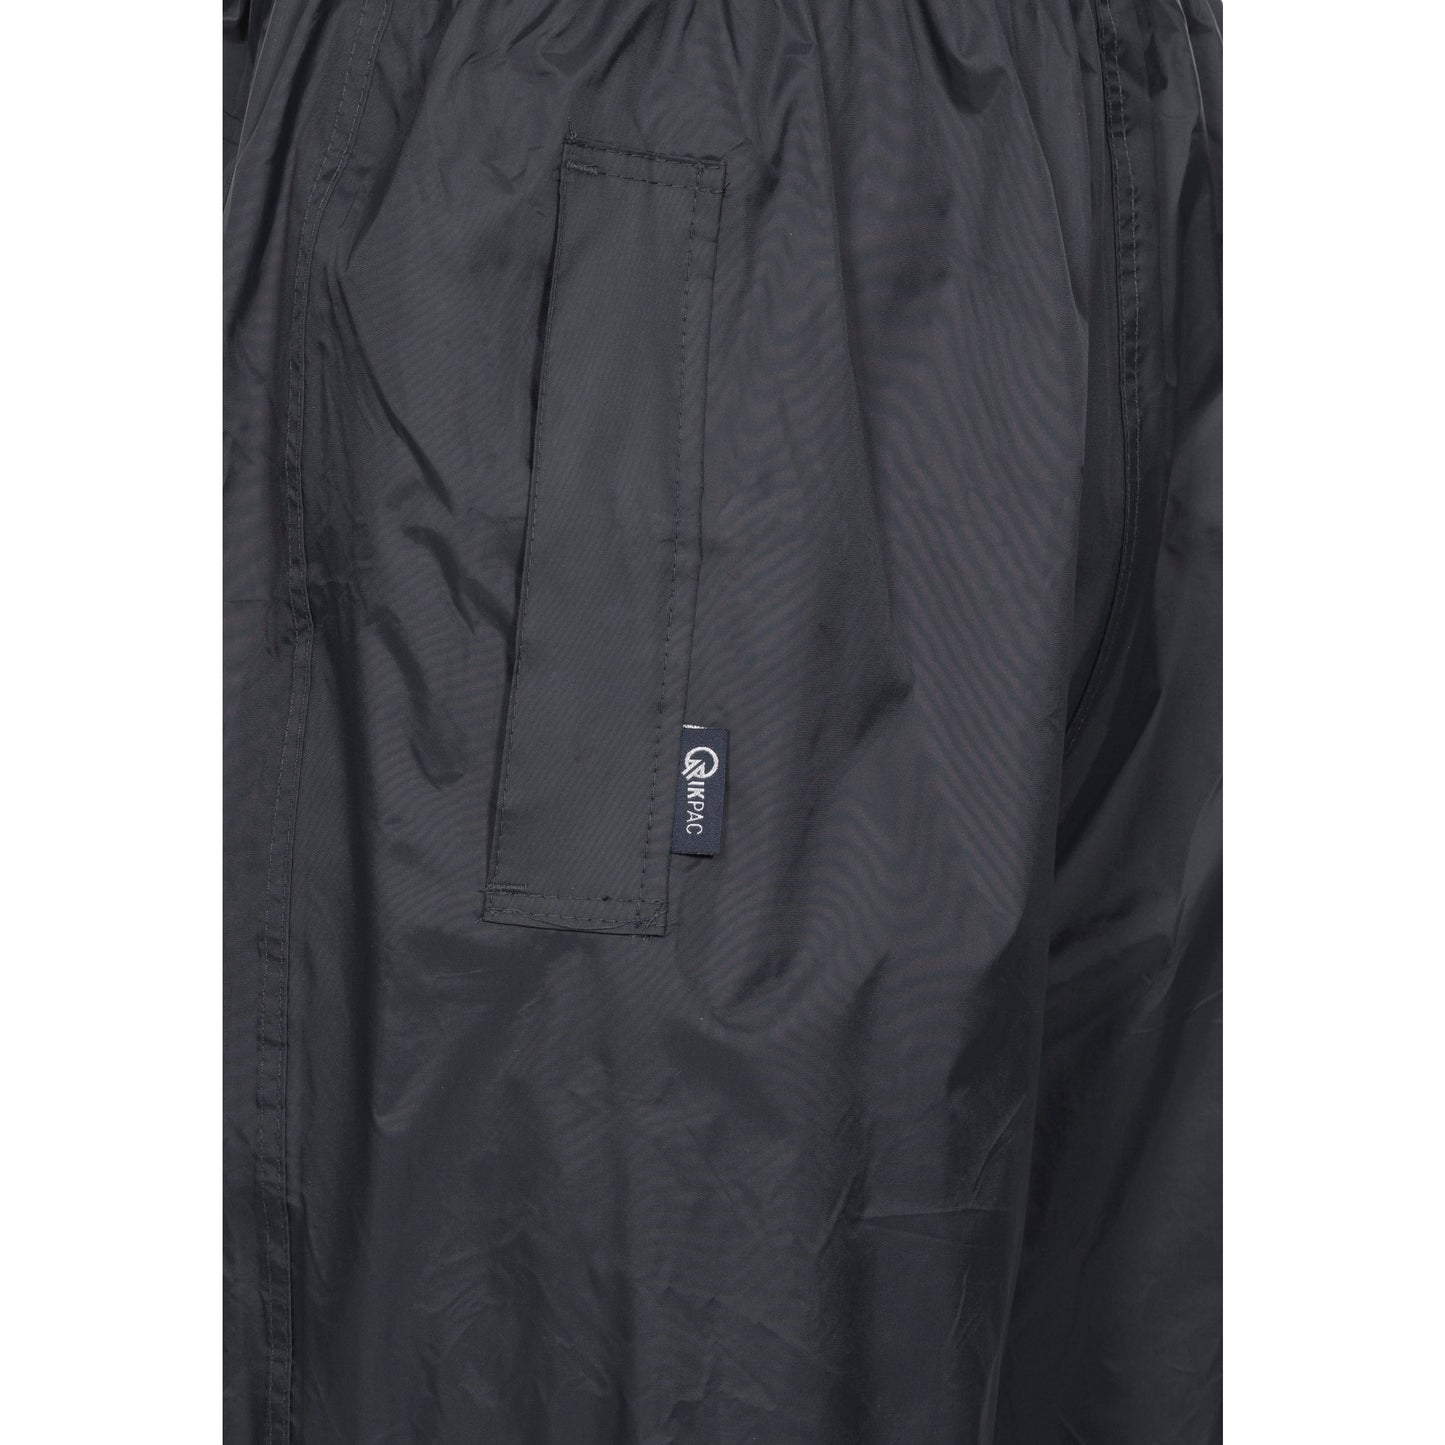 Qikpac Adults Unisex Pack Away Waterproof Trousers - Black